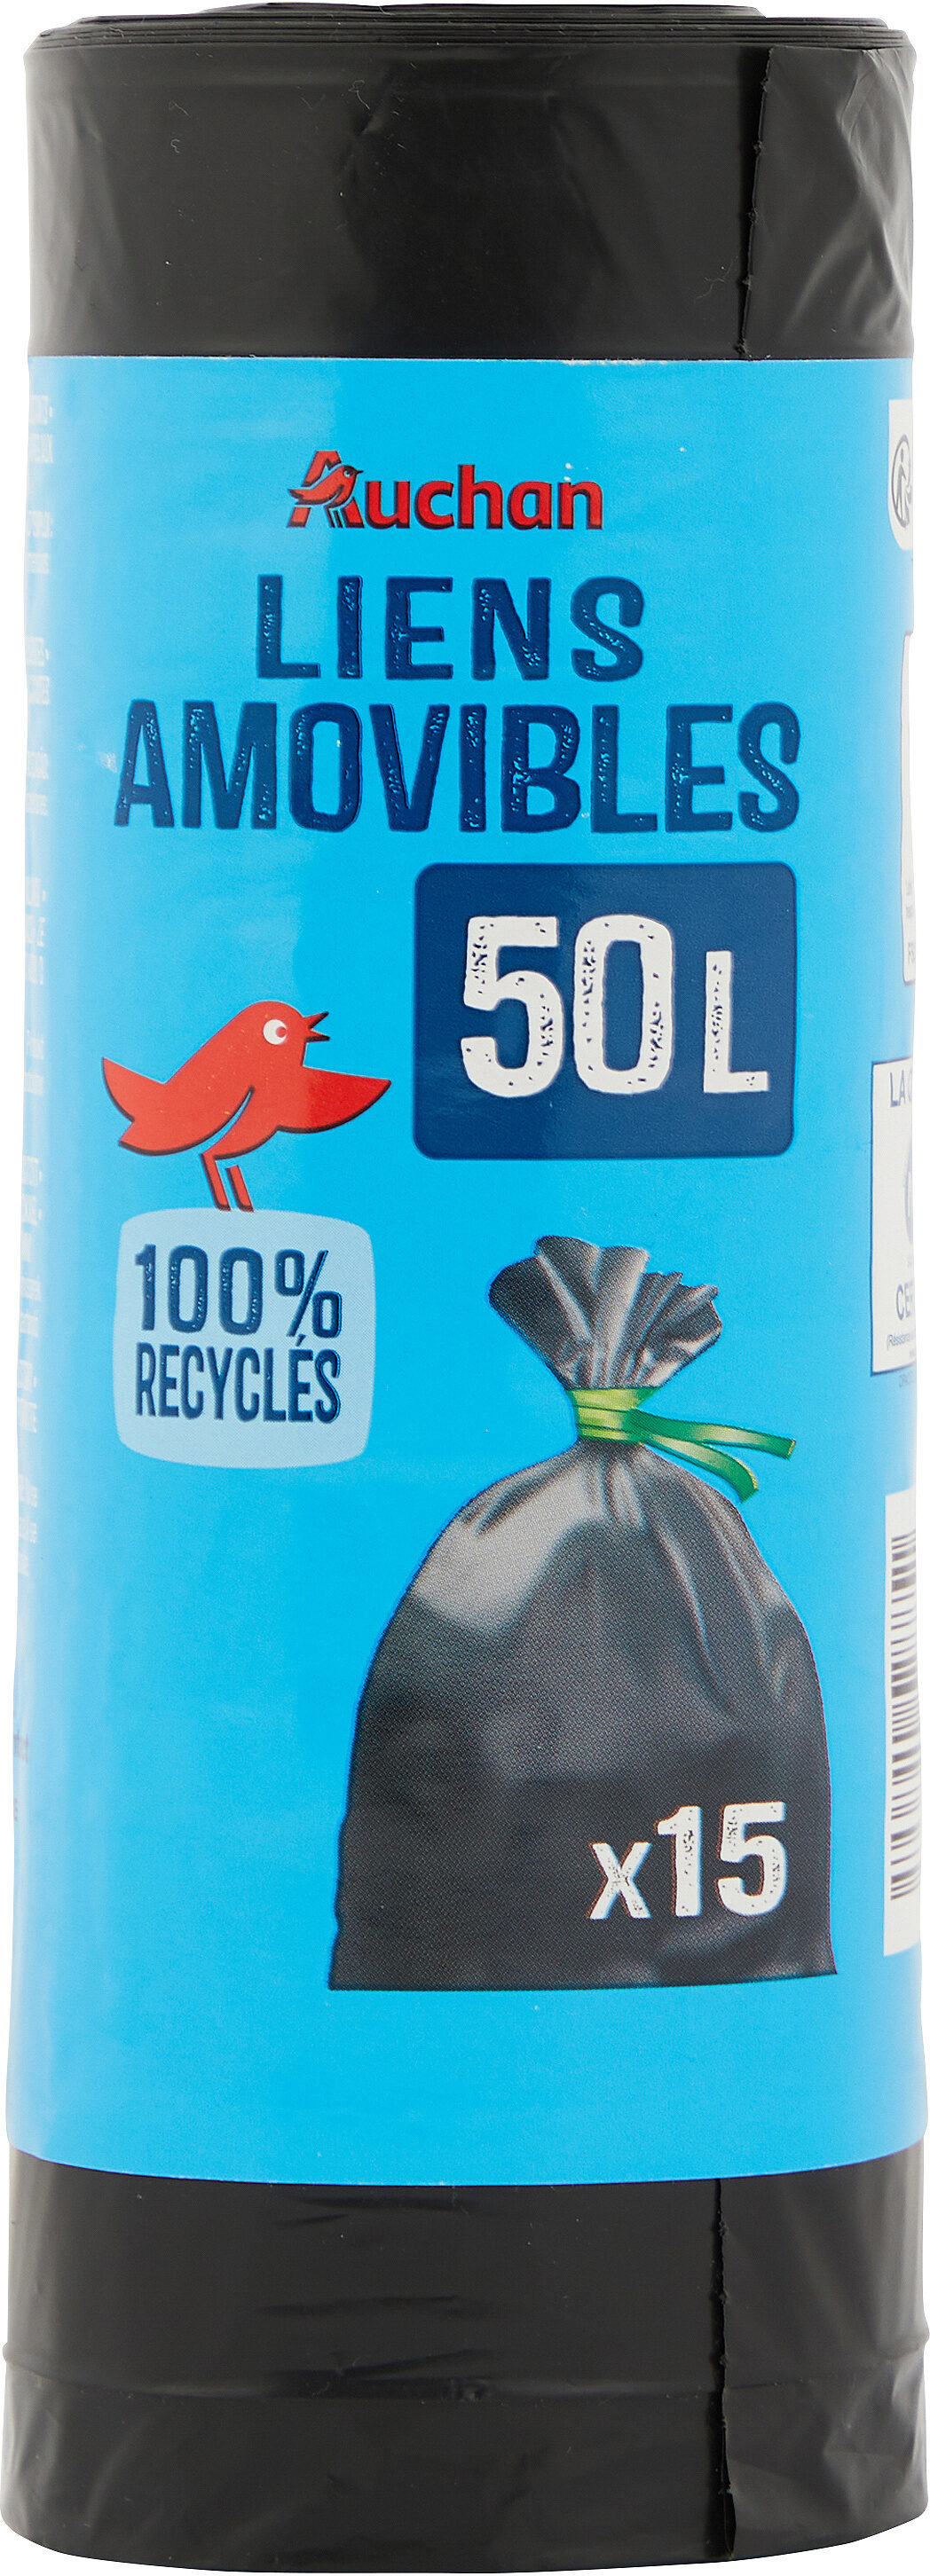 Sacs poubelle liens amovibles 50 litres - Product - fr